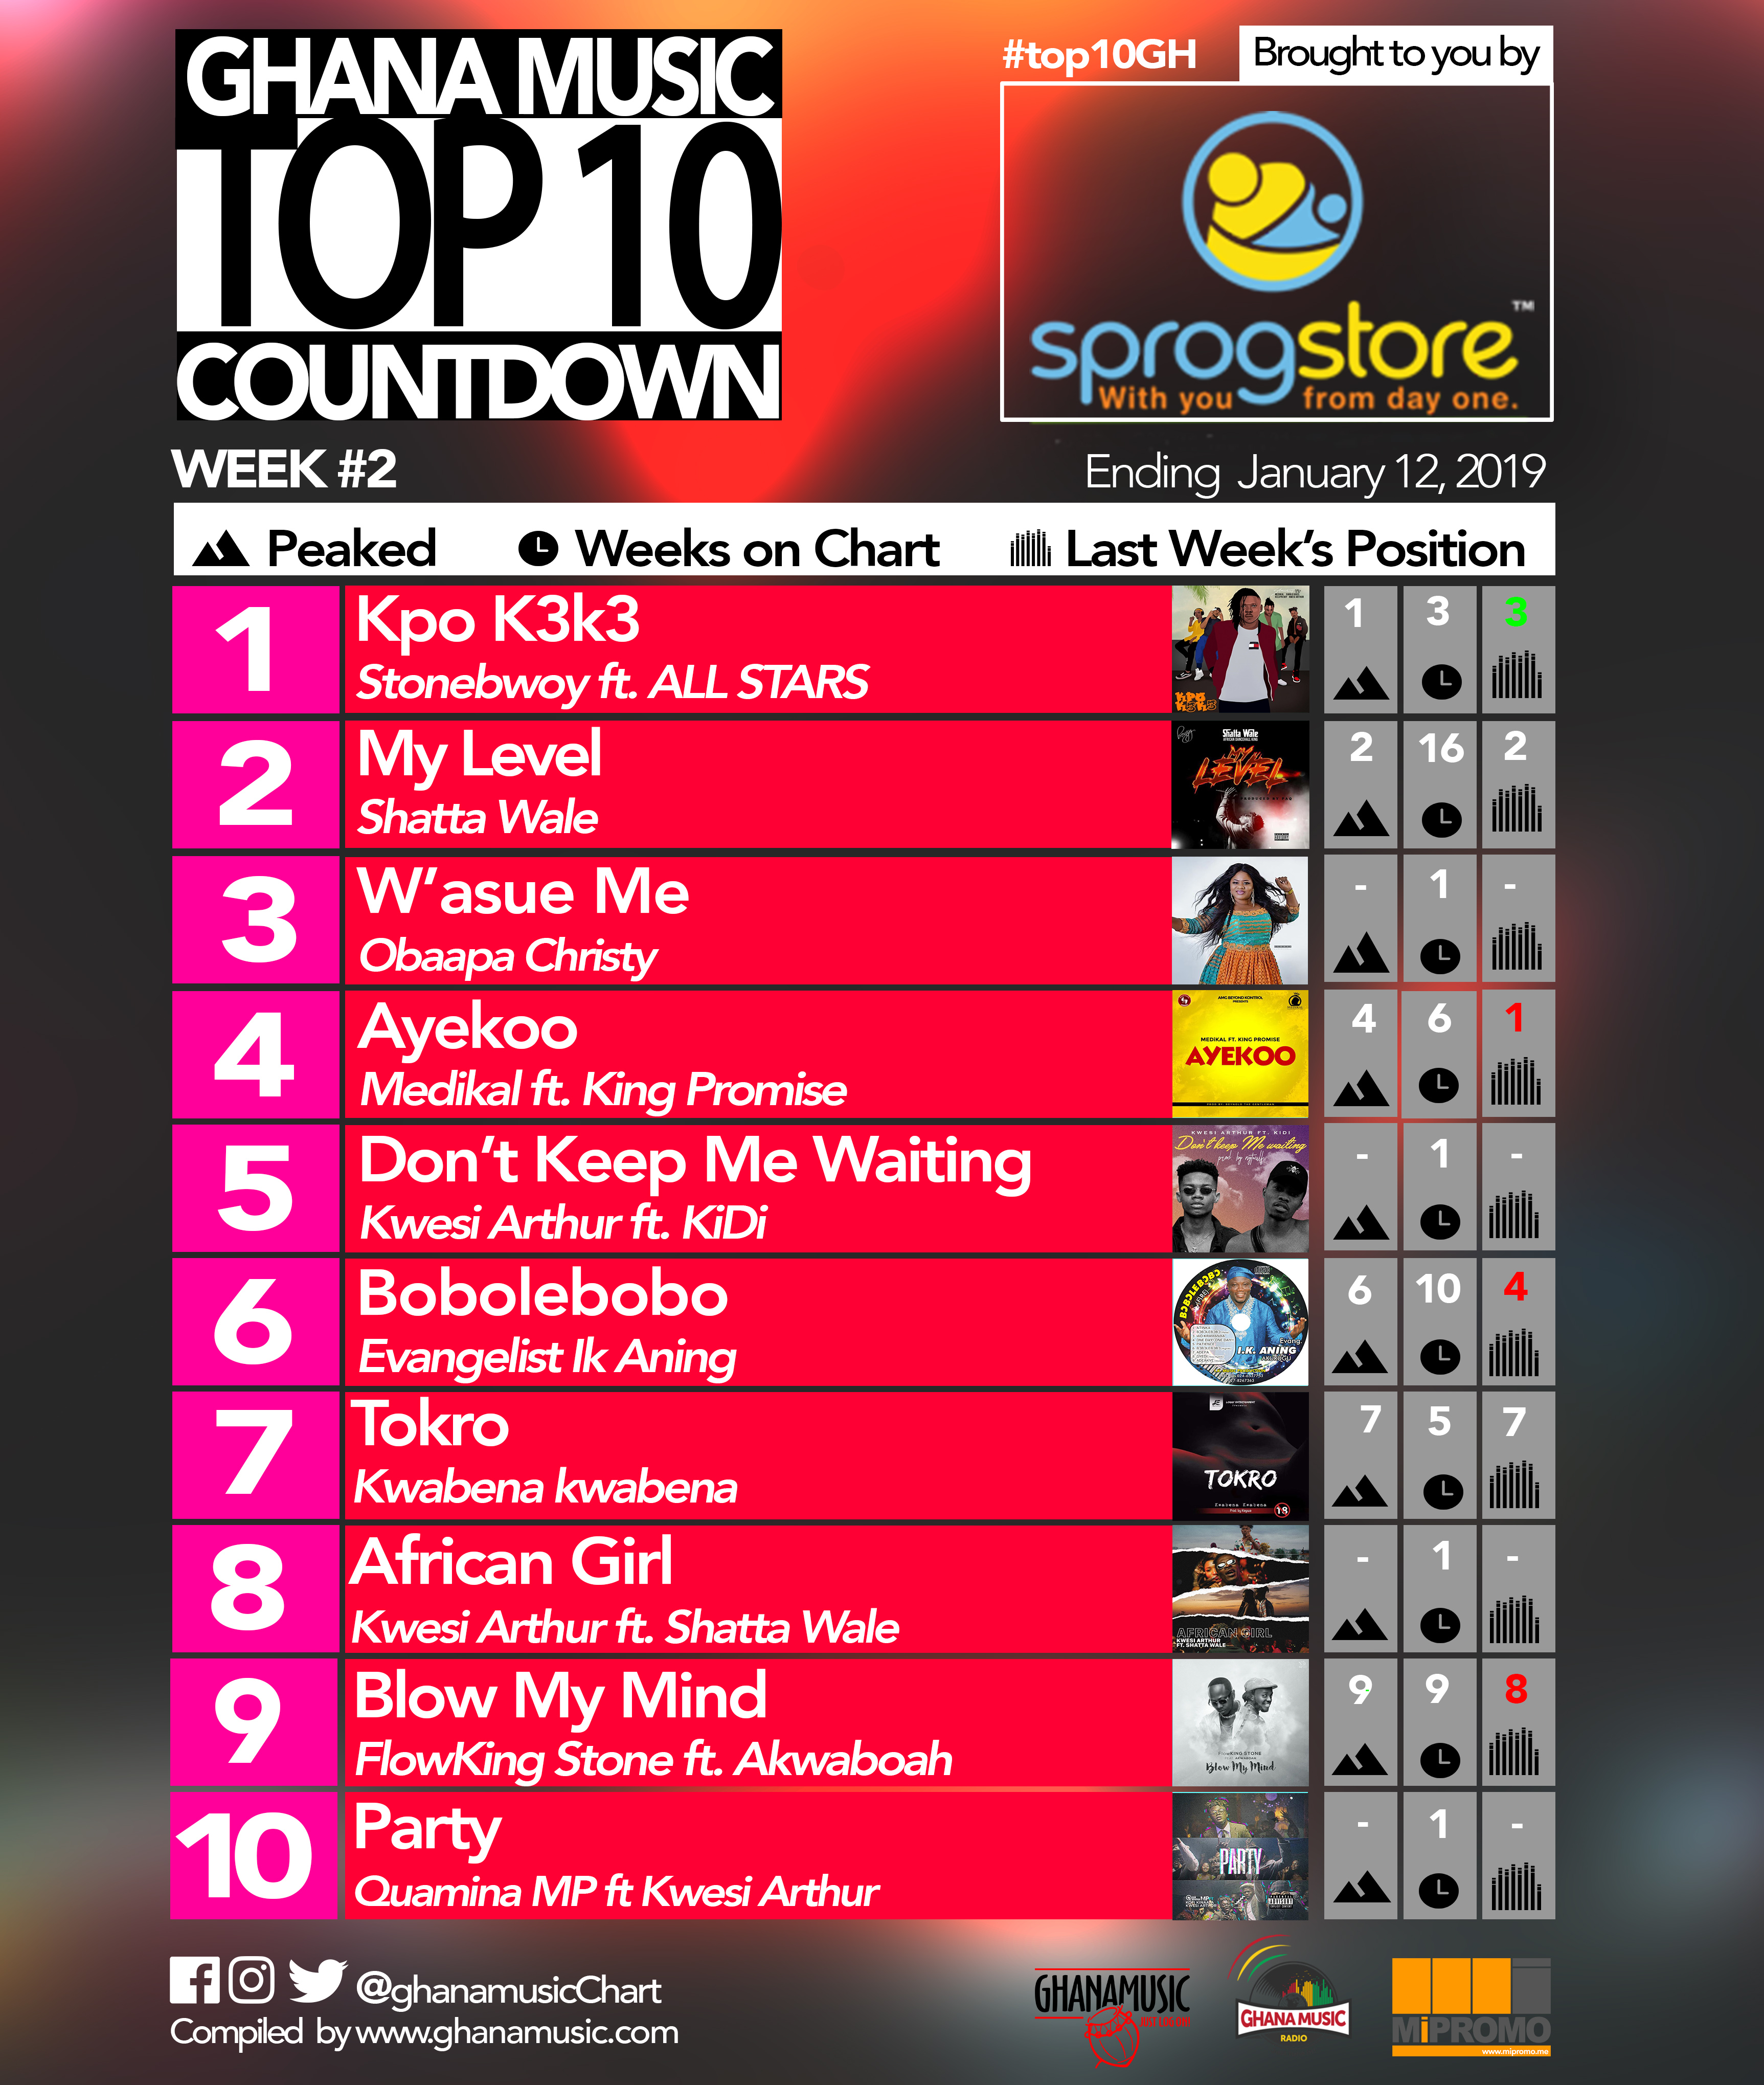 Week #2: Ghana Music Top 10 Countdown